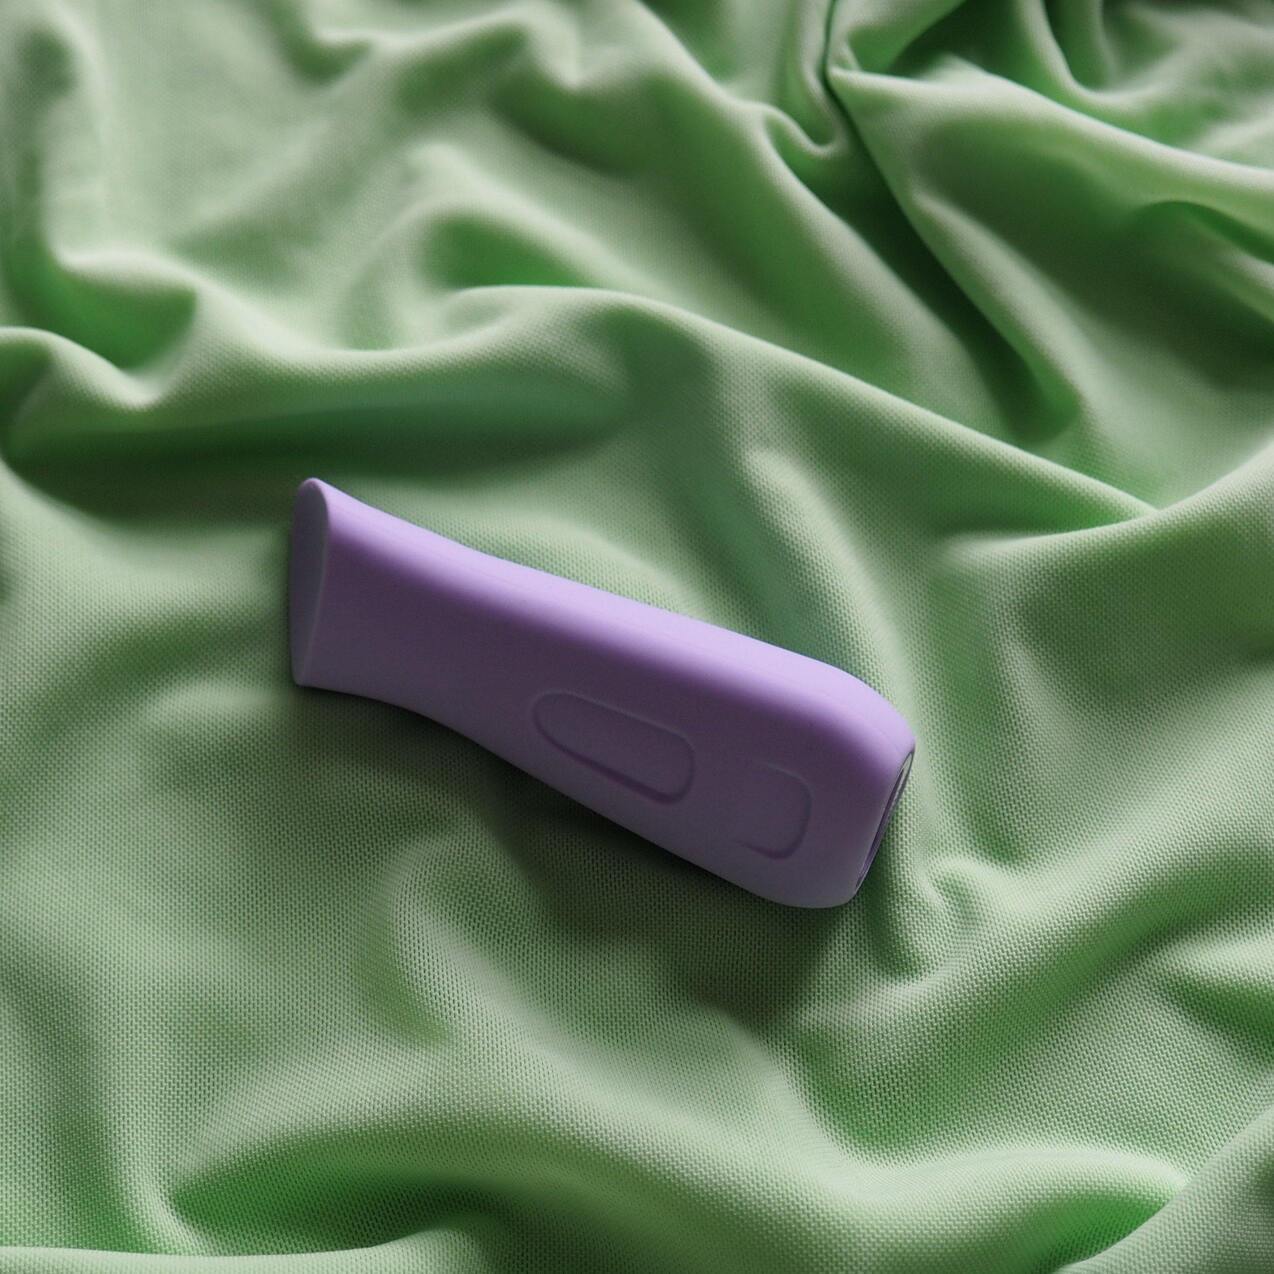 Vibrator kip fra dame products sexlegetøj på grøn baggrund